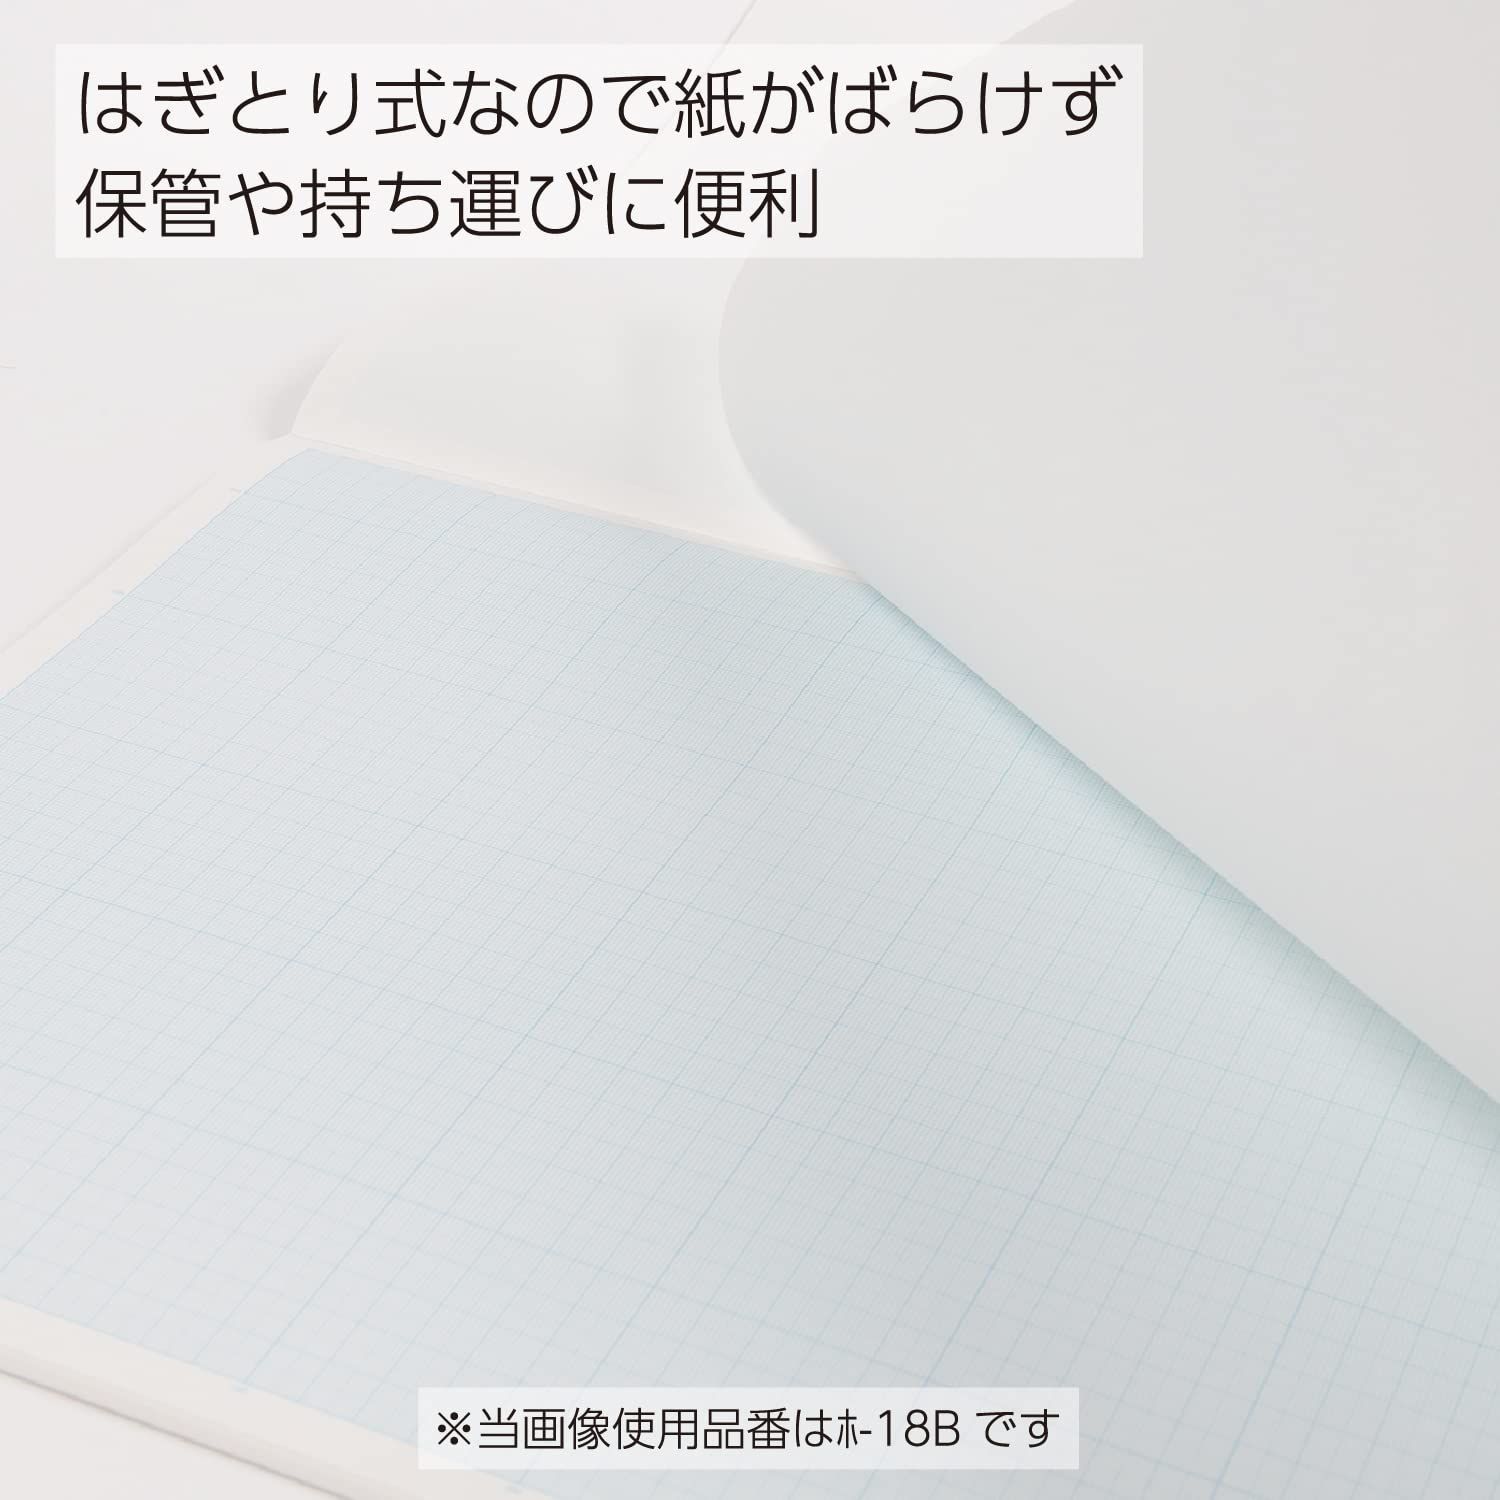 数量限定】ホ-19N 50枚 ブルー刷 A4 1mm目 方眼紙 コクヨ - メルカリ